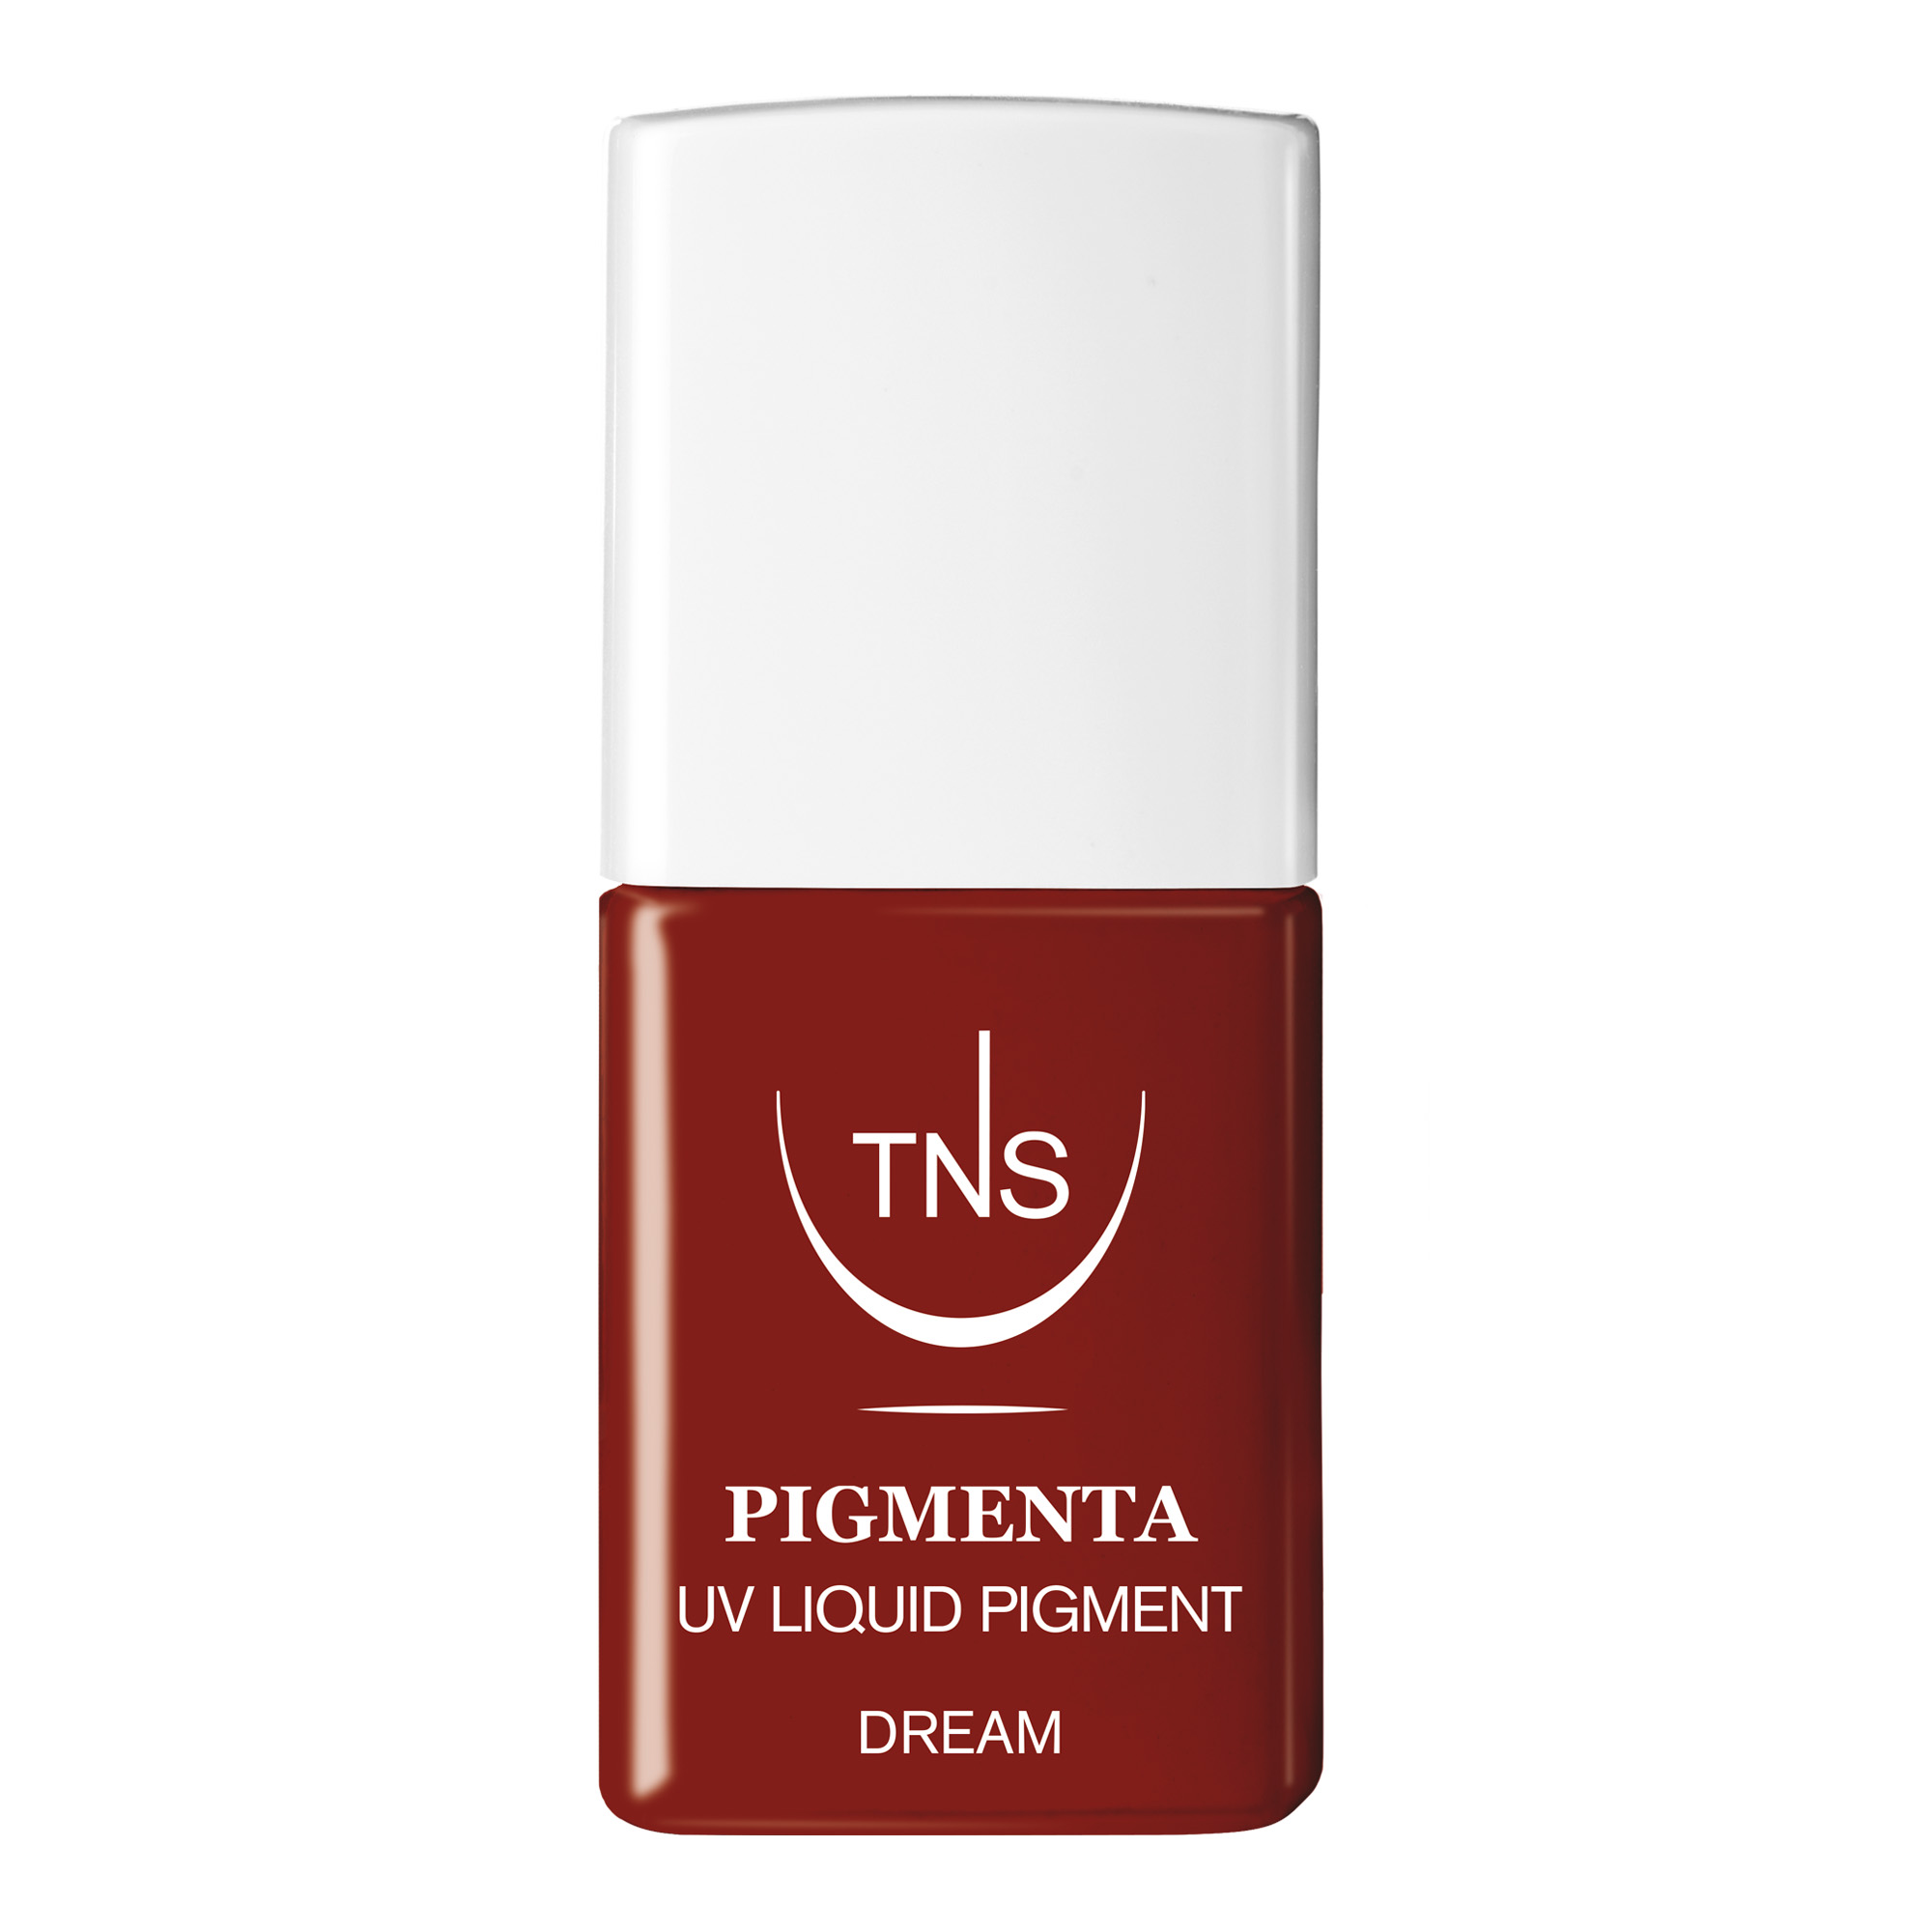 UV Flüssigpigment Dream burgunderfarbenes 10 ml Pigmenta TNS